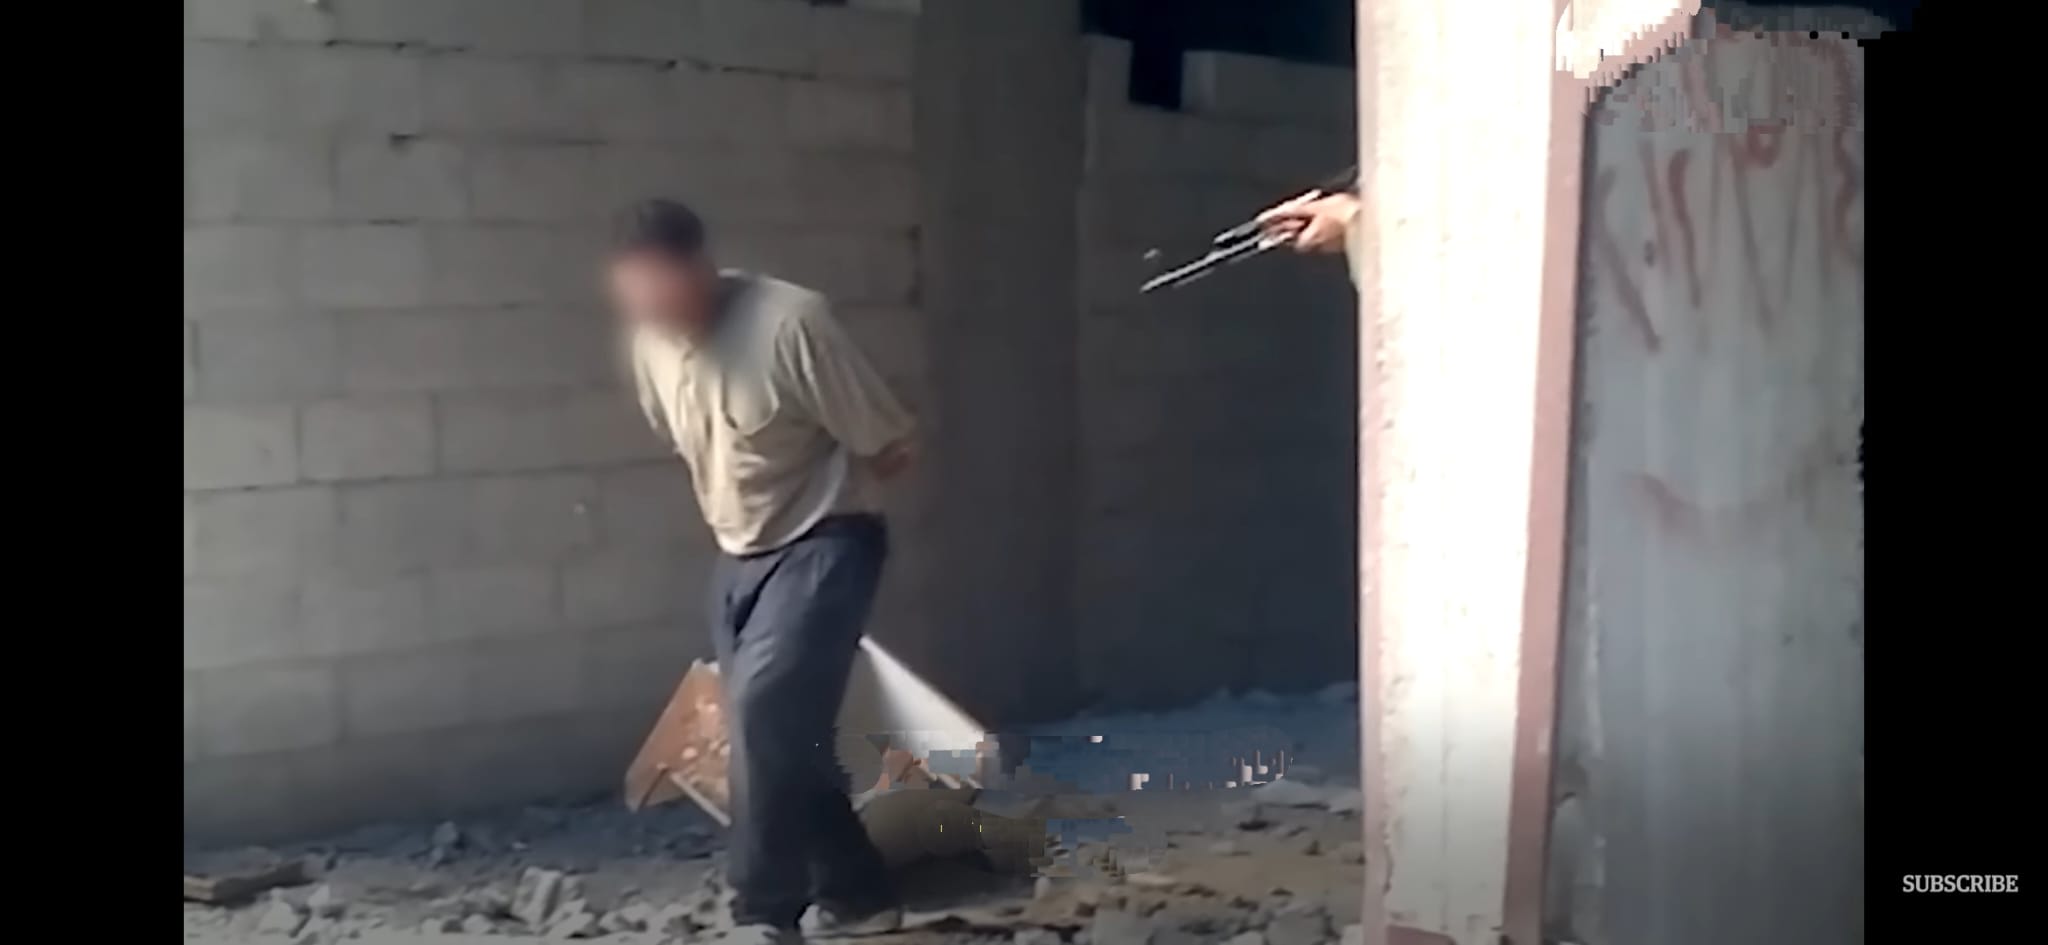 فيديو جديد لعمليات إعدام نفذتها قوات النظام السوري بحق مدنيين في حي التضامن